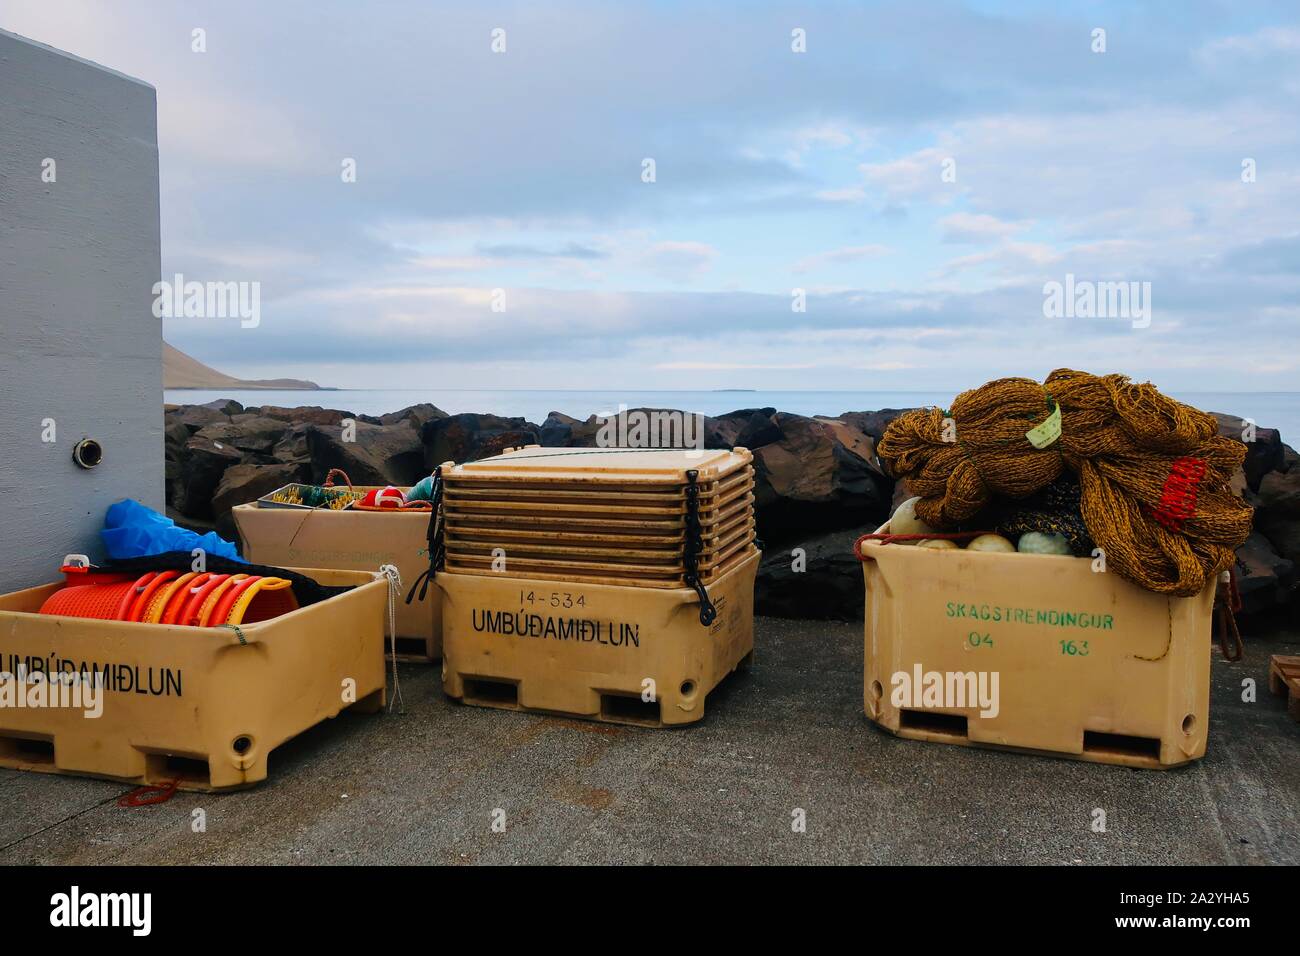 Grundarfjordur, Islande - 27 septembre 2019 : les filets de pêche dans le port. L'industrie de la pêche est cette petite ville sa principale source de revenu. Banque D'Images